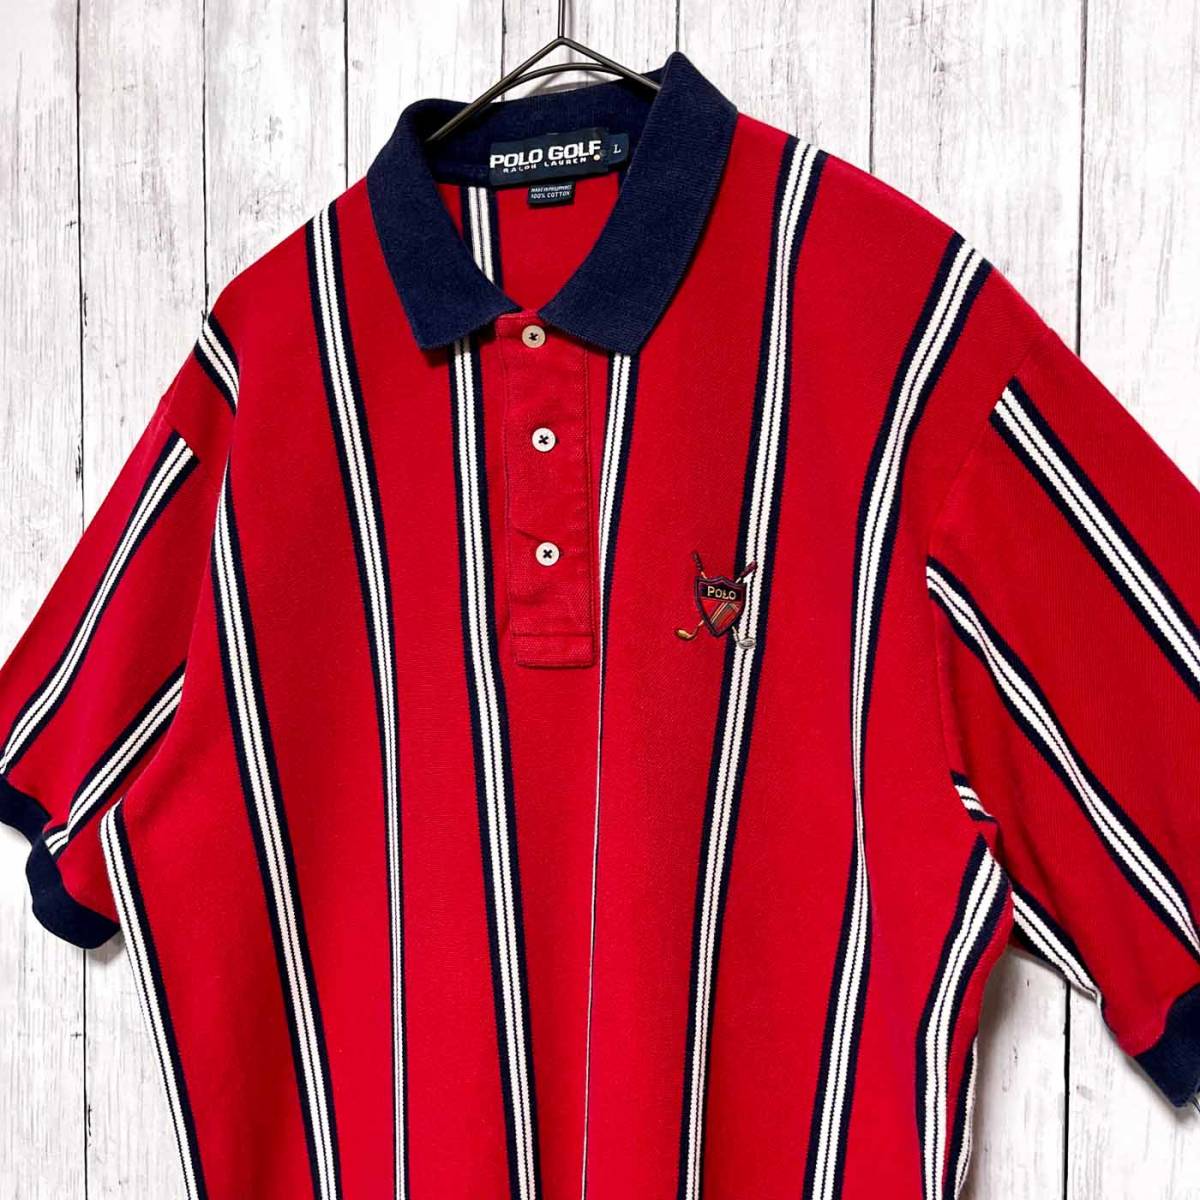 ポロゴルフ ラルフローレン Ralph Lauren POLO GOLF ストライプシャツ ポロシャツ 半袖シャツ メンズ ロゴ コットン100% Lサイズ 3‐441_画像3